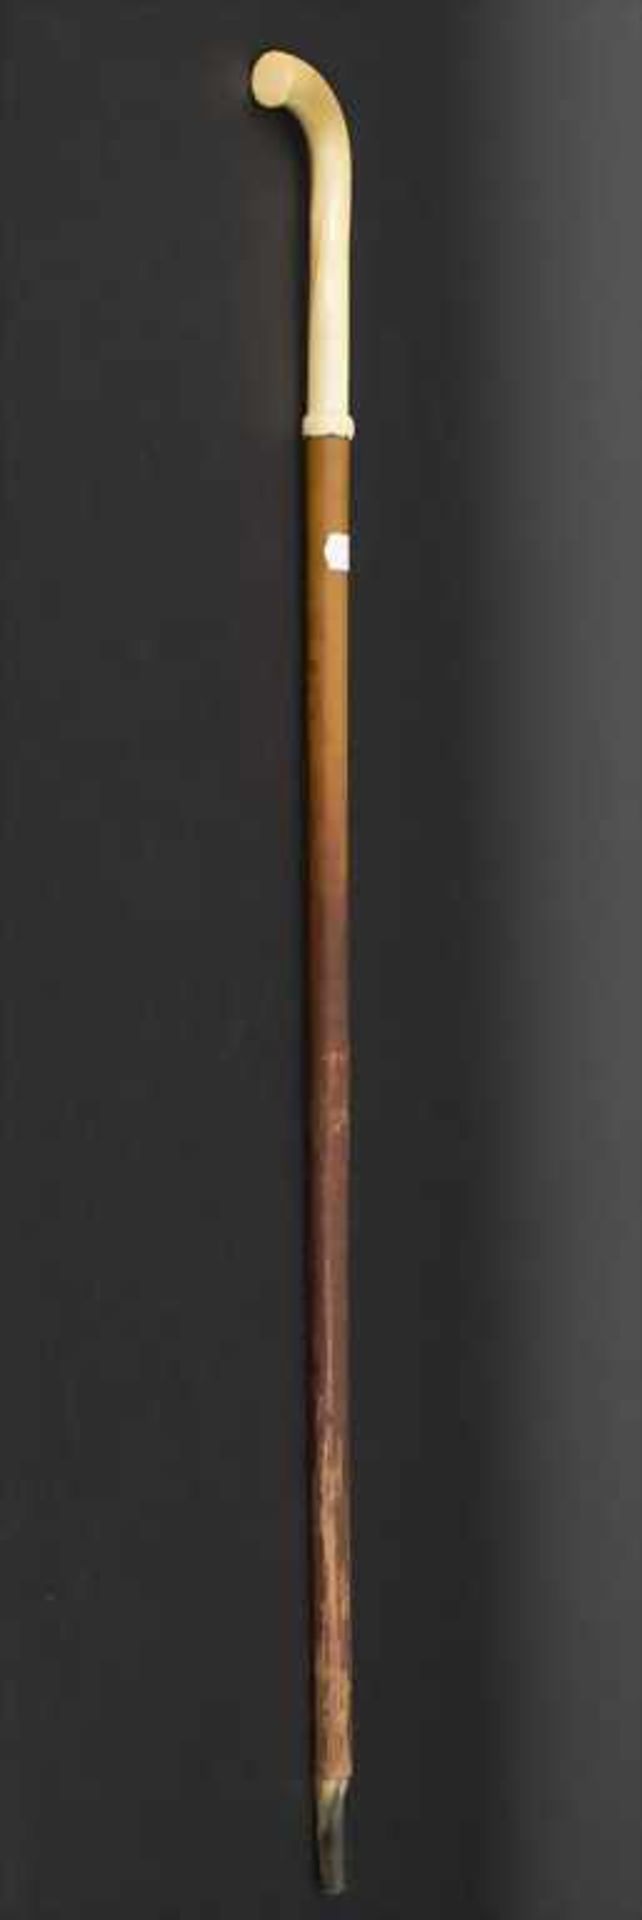 Gehstock mit Elfenbeingriff / A cane with ivory handle, um 1880Material: Malaccarohr (Schuss), - Bild 5 aus 5